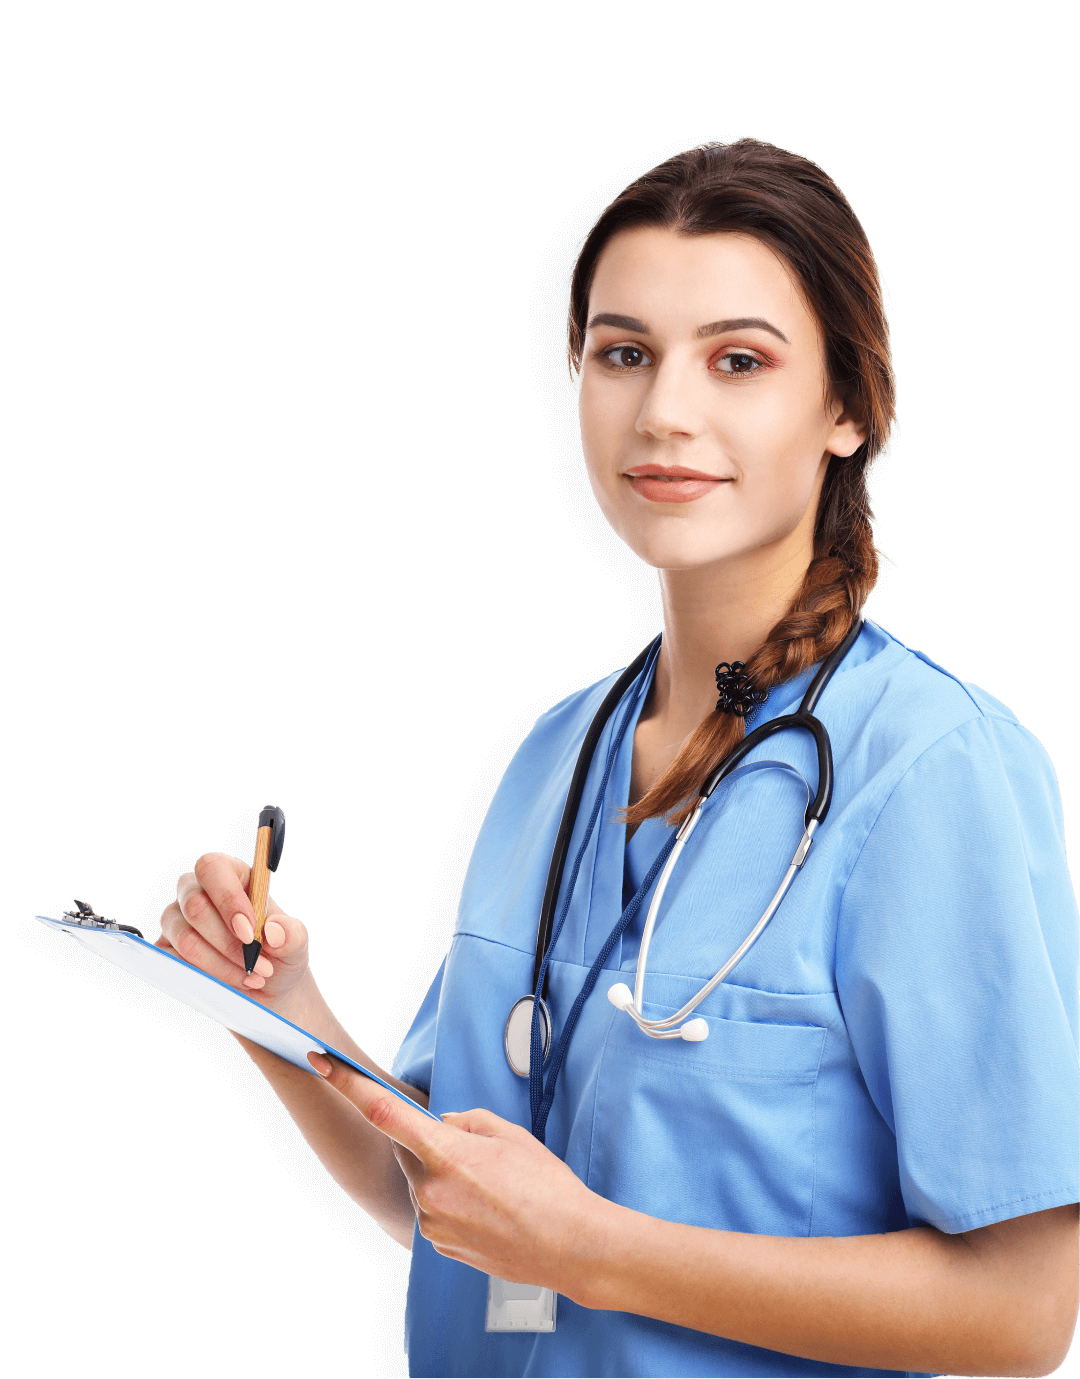 Nurse-Critical Care (CCRN) professional